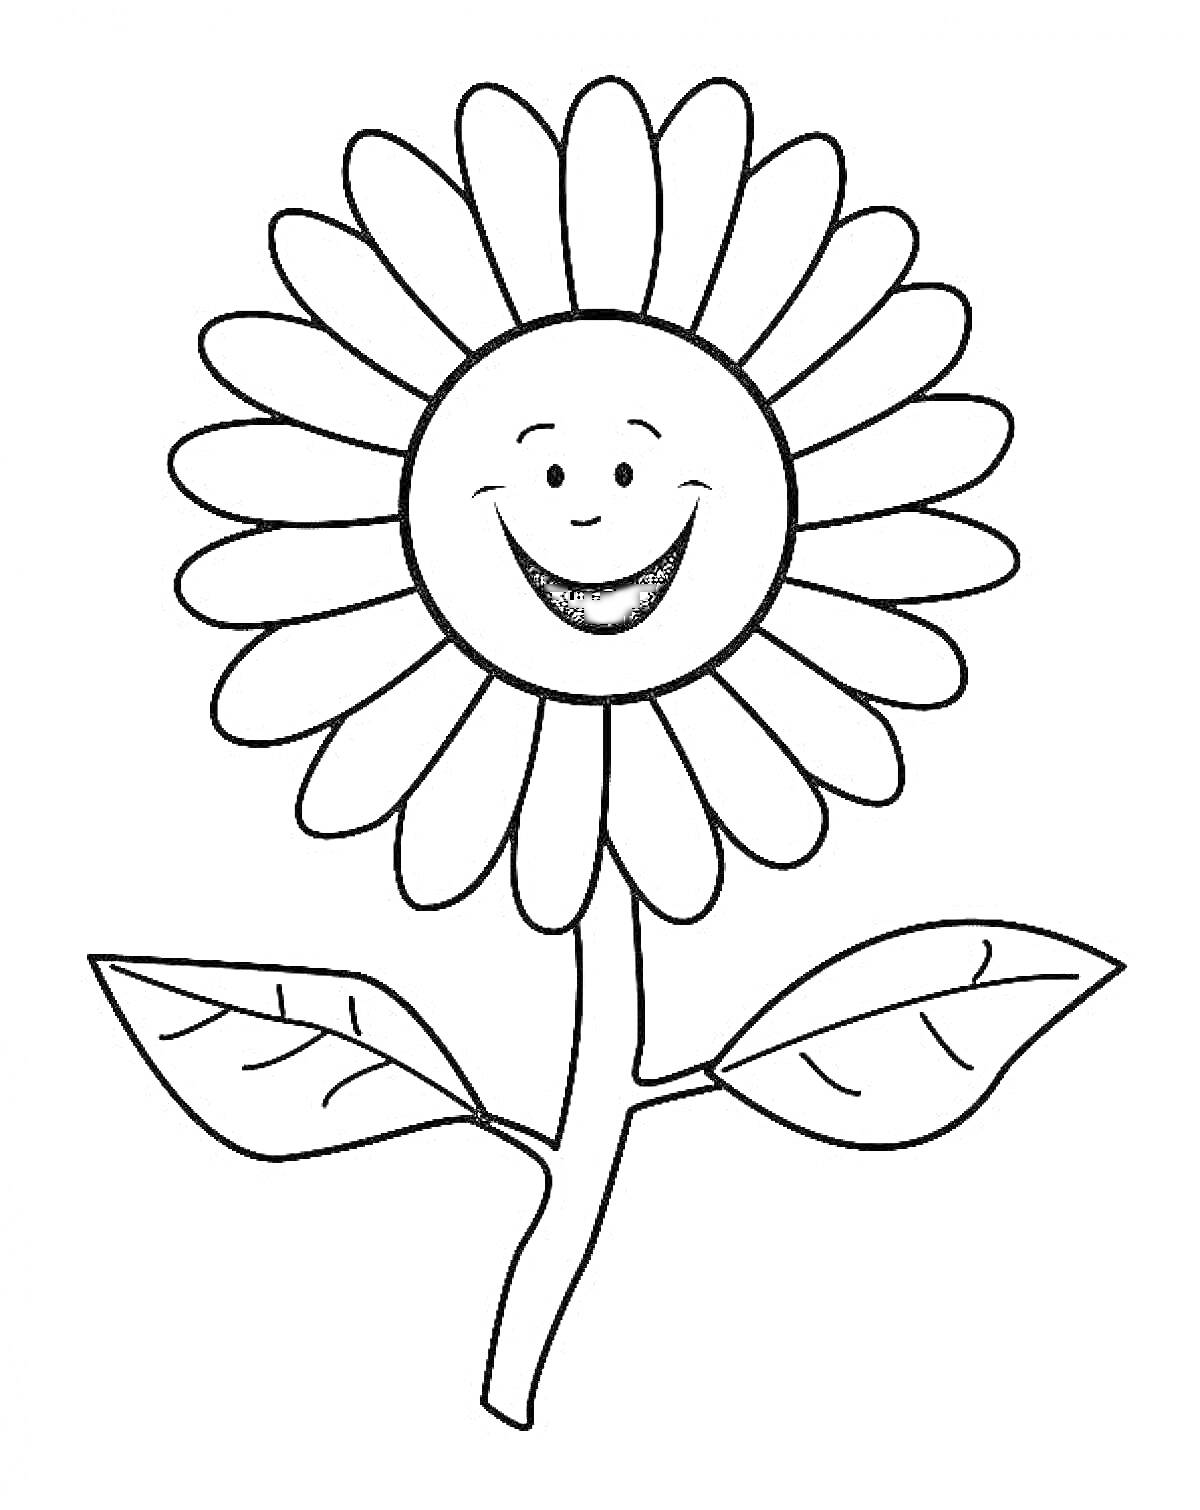 Раскраска Ромашка с улыбающимся лицом, стеблем и двумя листьями